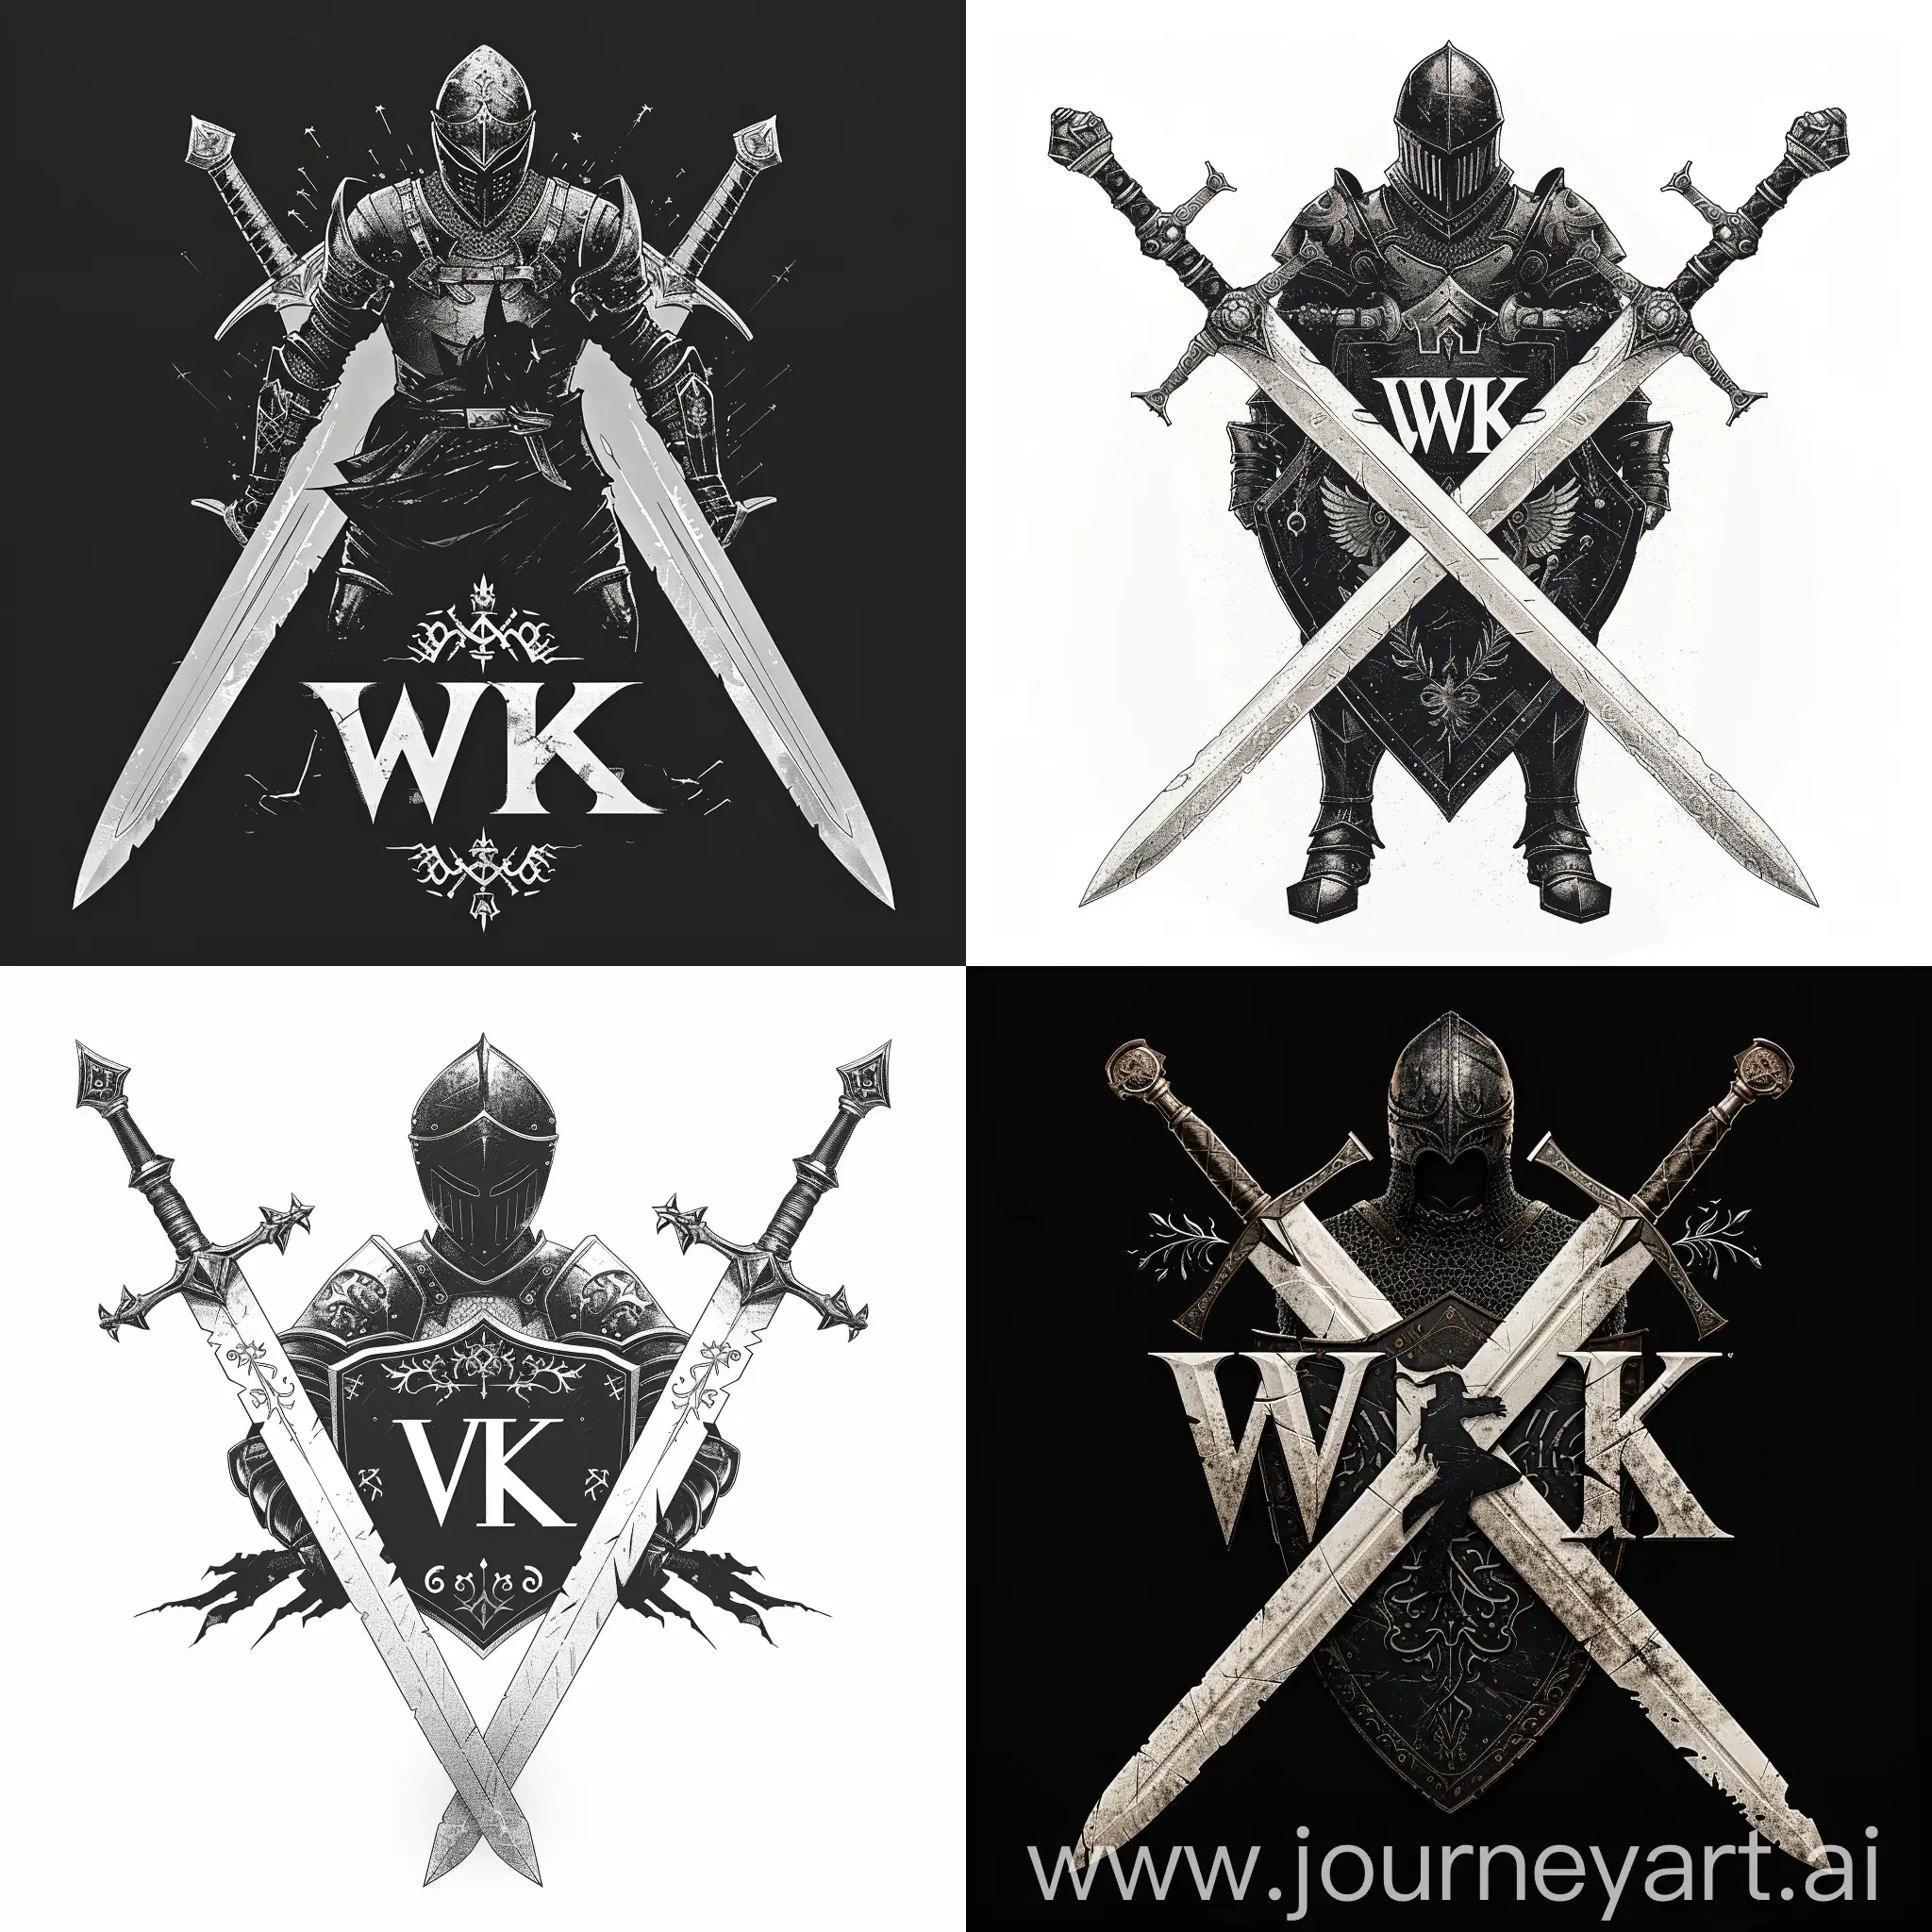 логотип "WK", где буквы "WK" стилизованы в форме двух переплетающихся мечей с орнаментами на лезвиях, белые мечи, между мечами изображен черный рыцарь в боевой позе держащий в руках щит и меч, рыцарь представлен в доспехах с символикой, отражающей его мощь и благородство, цветовая гамма белый мечи, черный рыцаря, готический шрифт "WK" в форме мечей, --quality 3 --s 300